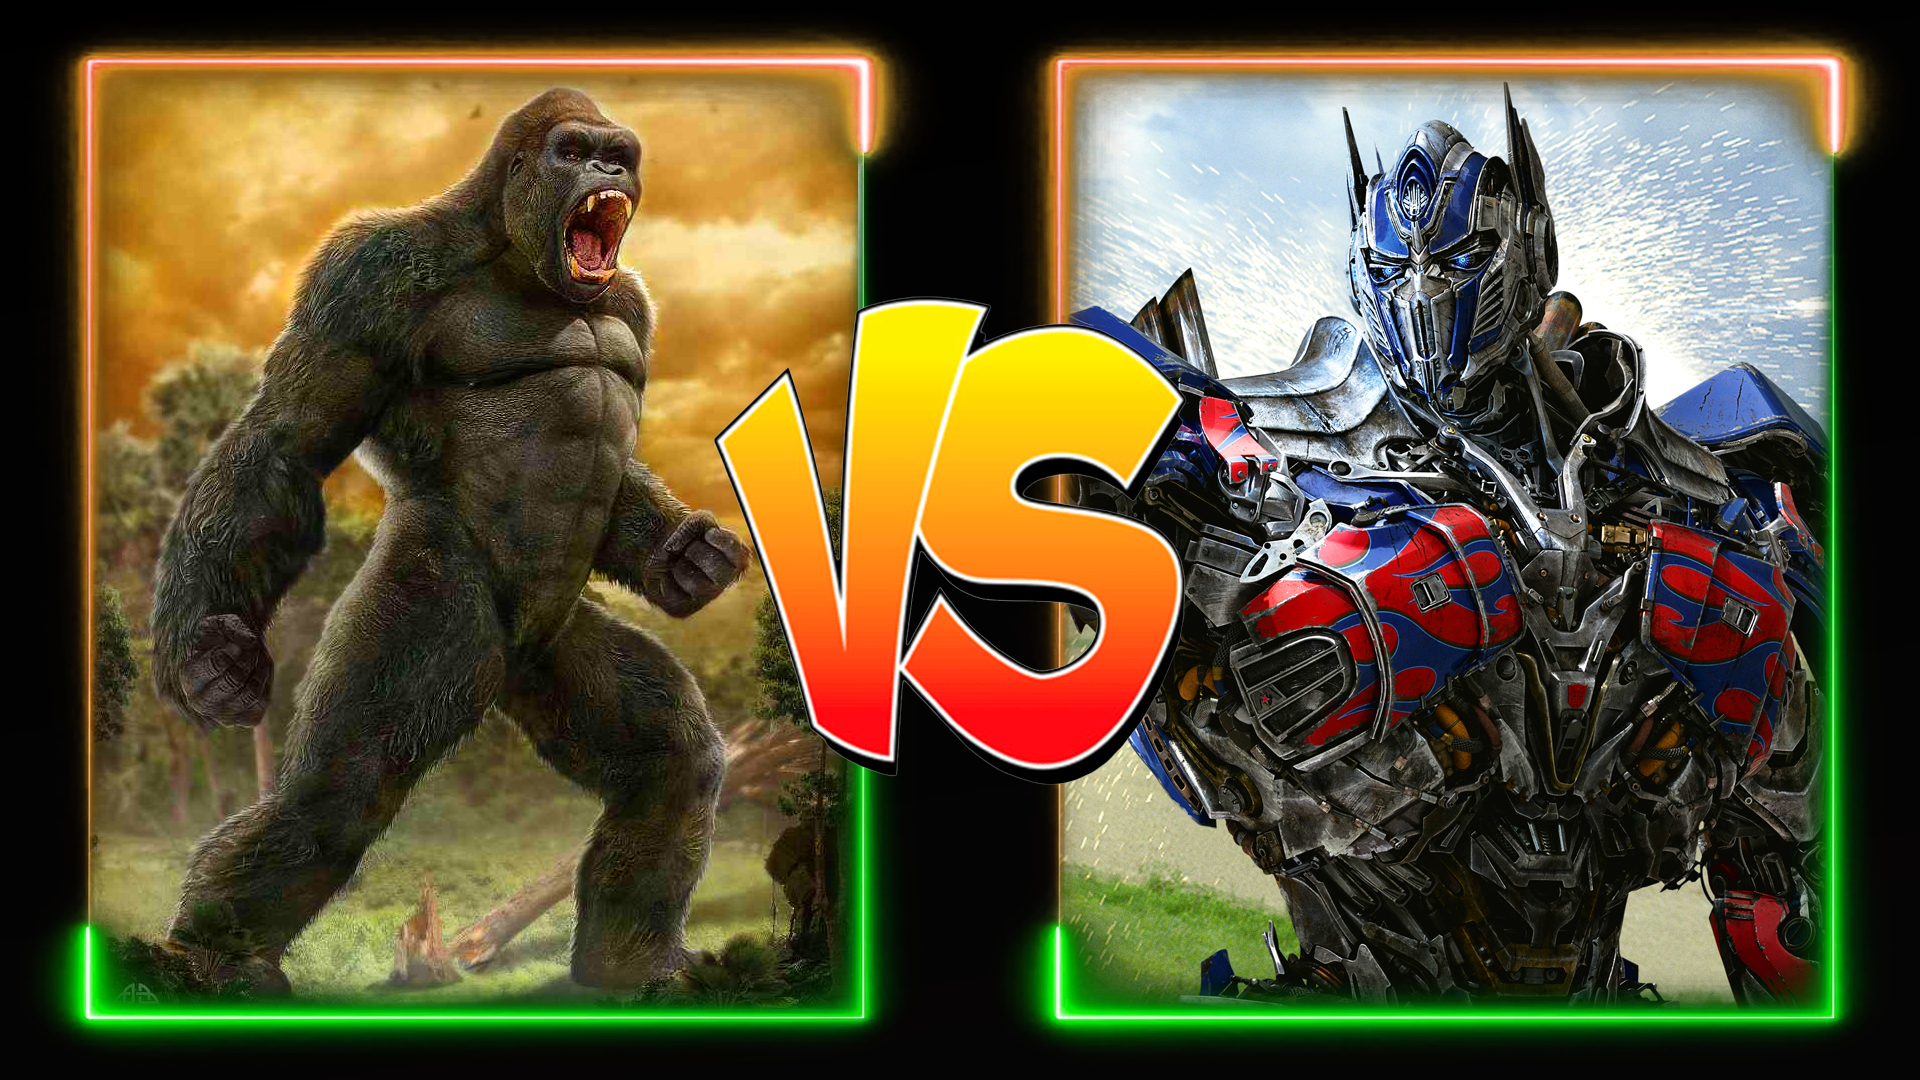 King Kong Fighting Game screenshot game